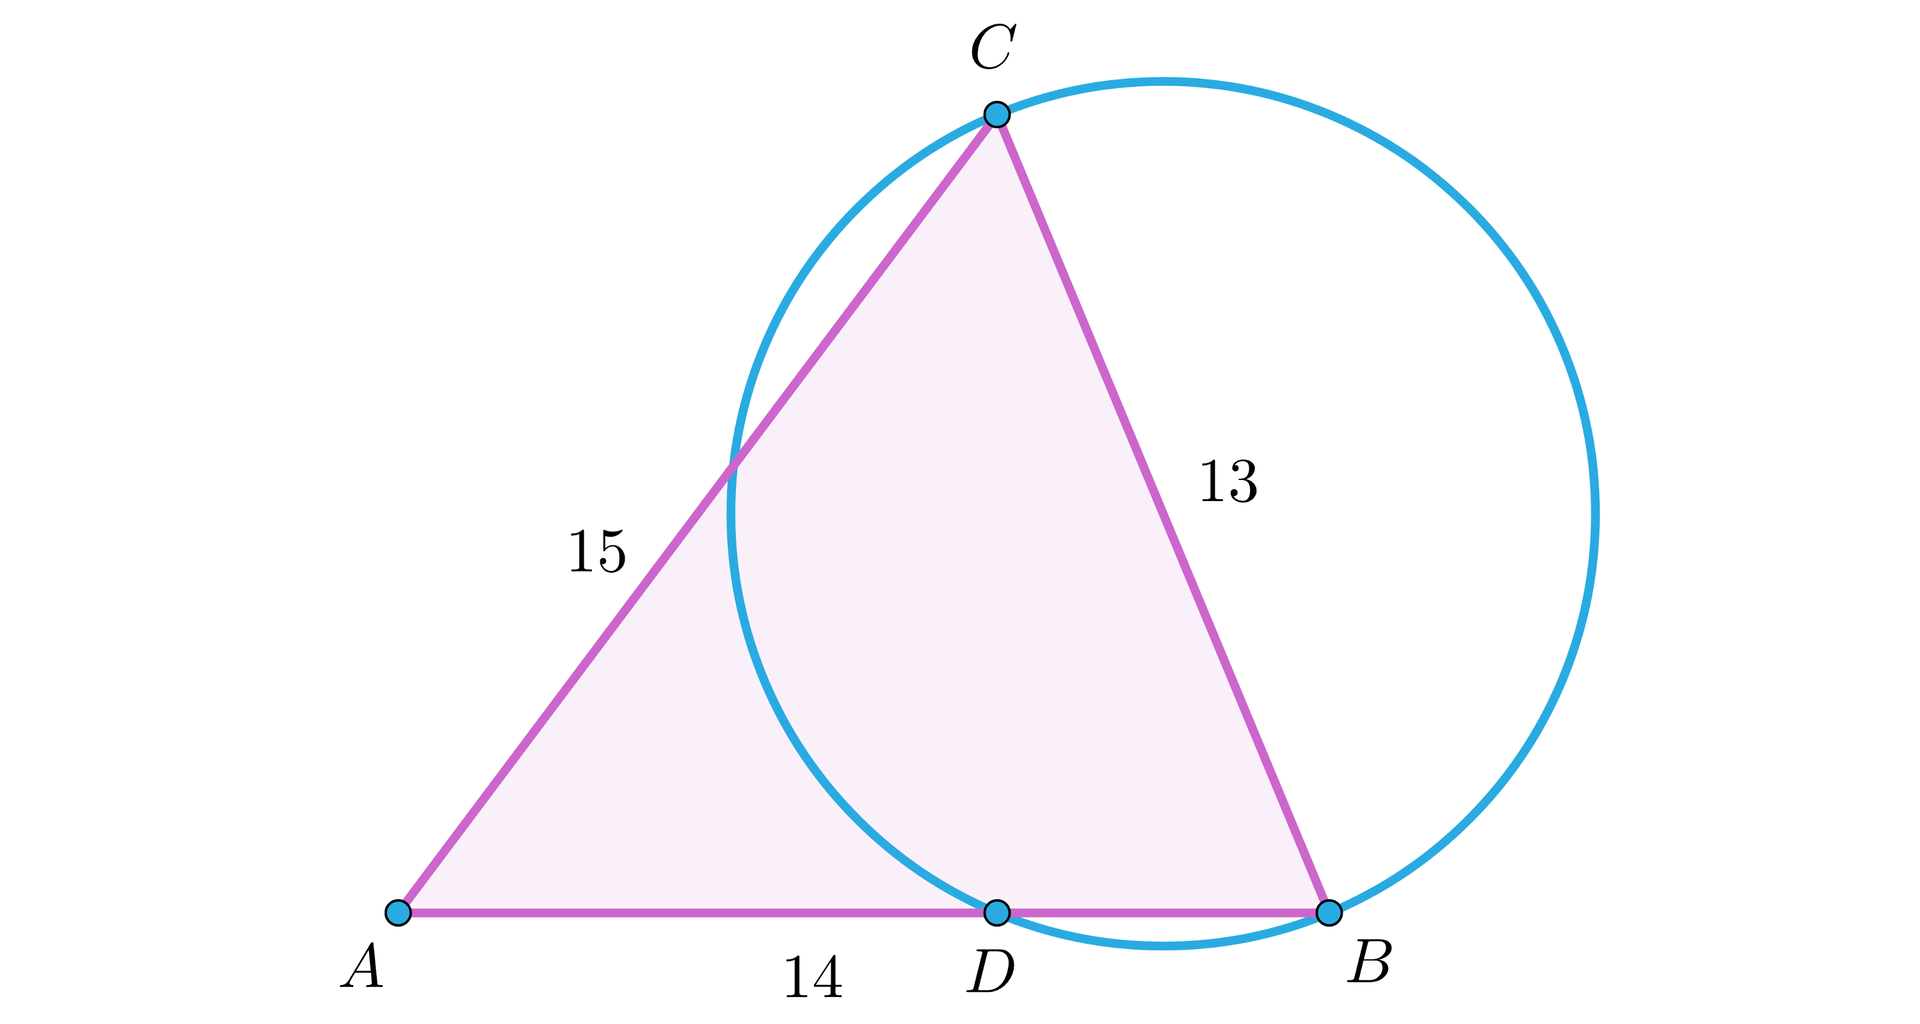 Grafika przedstawia okrąg oraz trójkąt.  Na okręgu zaznaczone są 3 punkty: B, C, D. Poza okręgiem, z lewej strony znajduje się punkt A. Wierzchołki trójkąta to punkty A, B i C, przy czym Punkt D leży na odcinku AB. Długość odcinka AC to 15. Długość odcinka AB to 14, długość odcinka BC to 13.